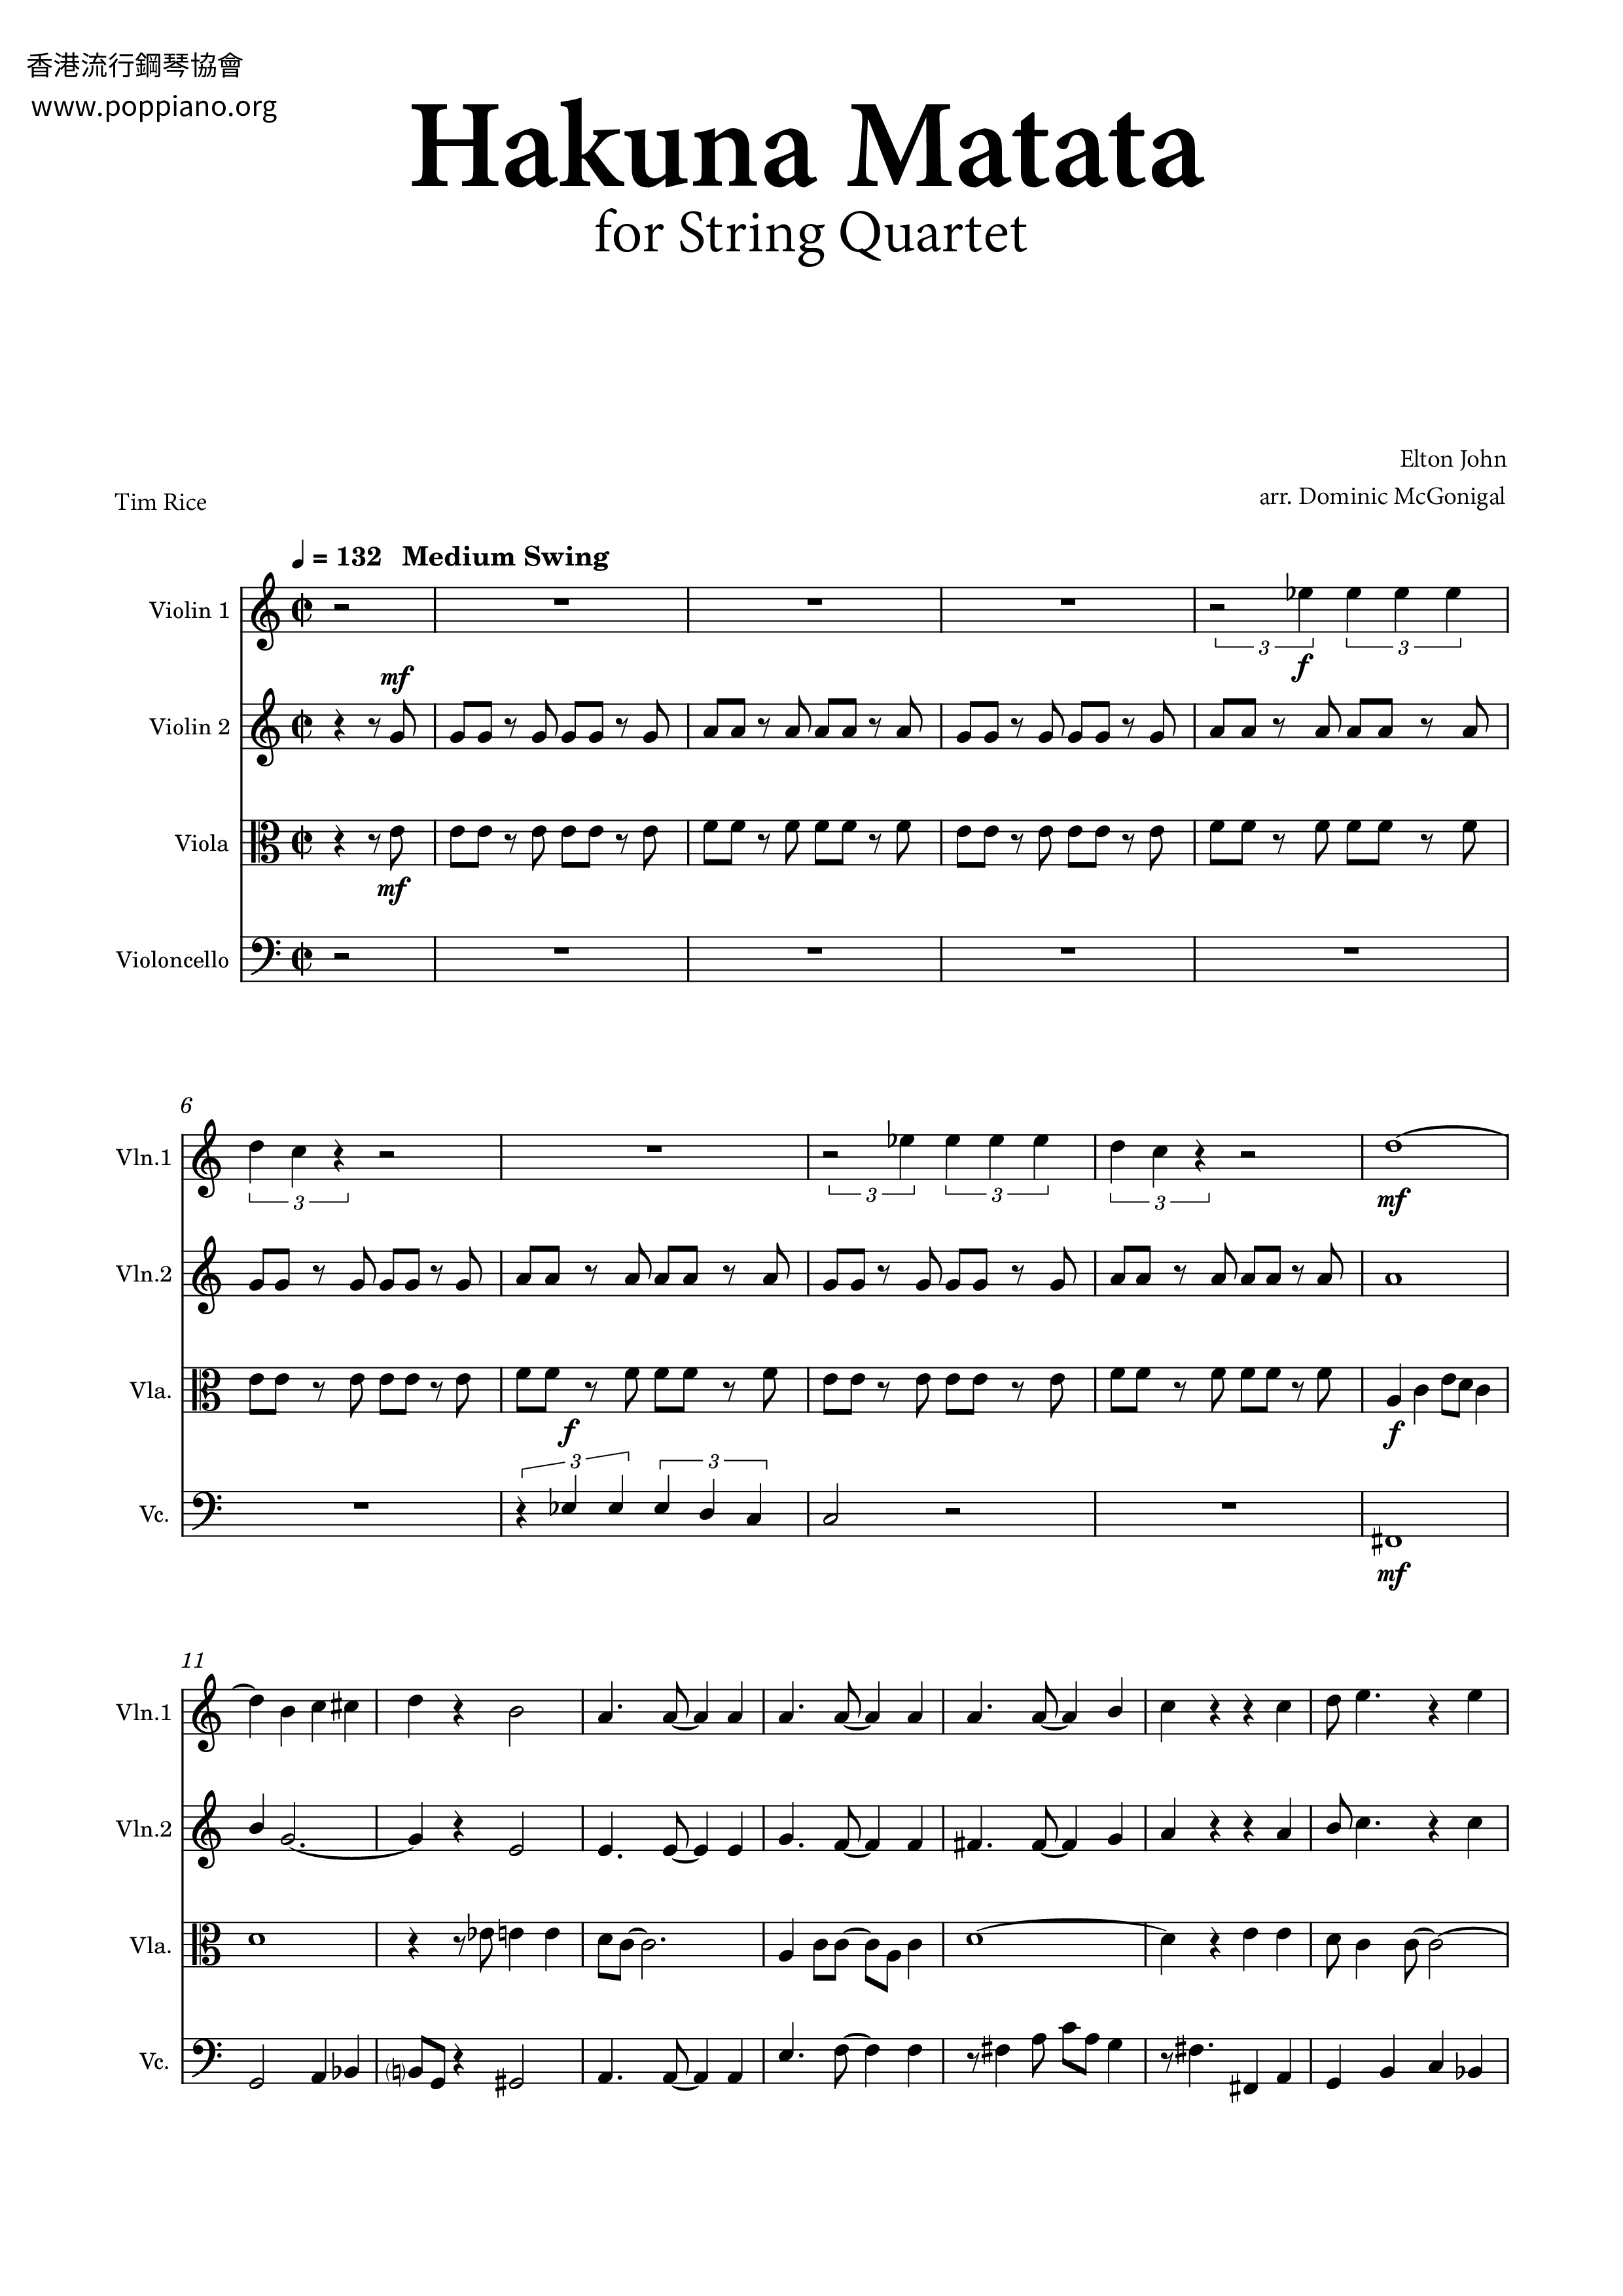 posterior Deber Seleccione ☆ The Lion King - Hakuna Matata - Sheet Music / Piano Score Free PDF  Download - HK Pop Piano Academy ☆